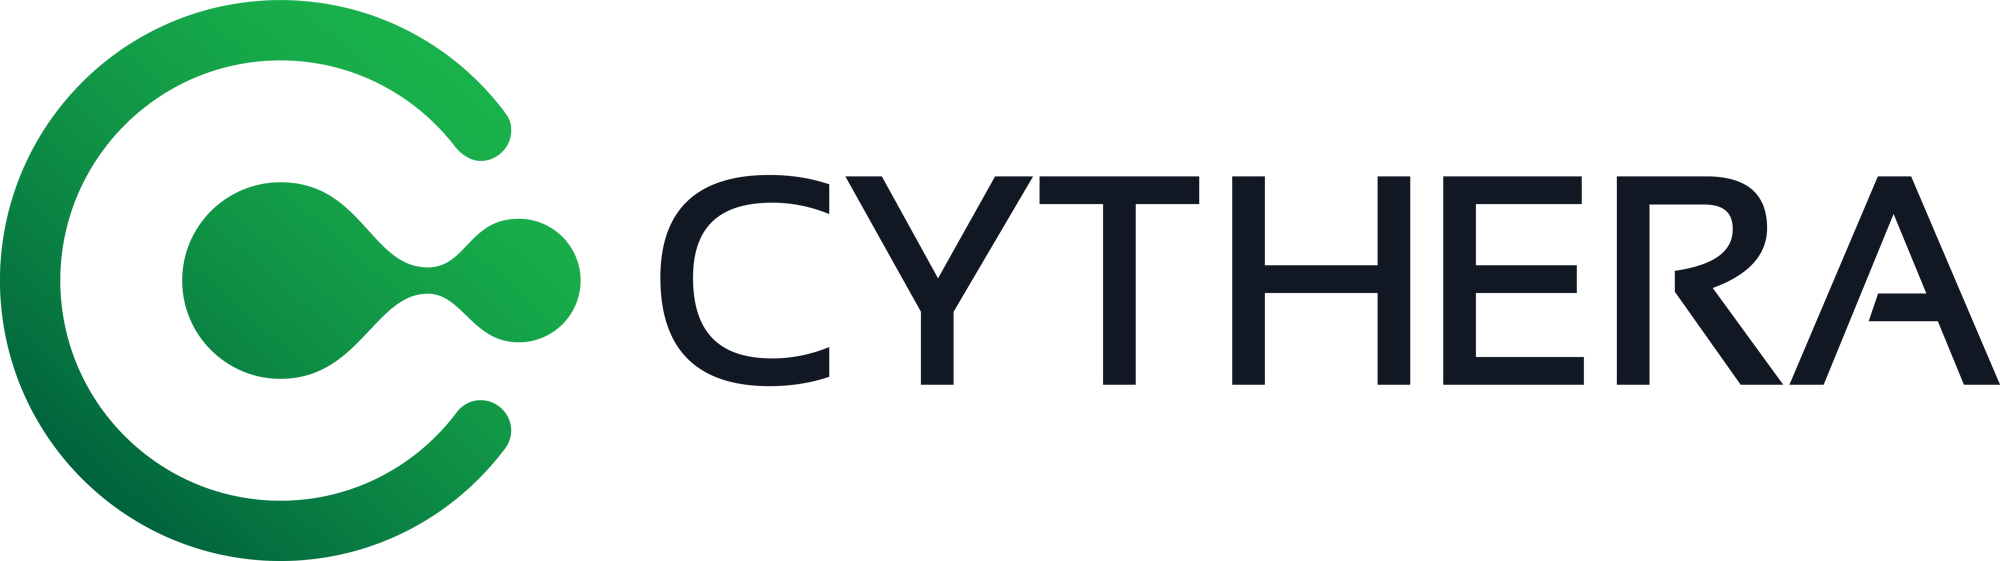 Cythera at 1000mm_RGB